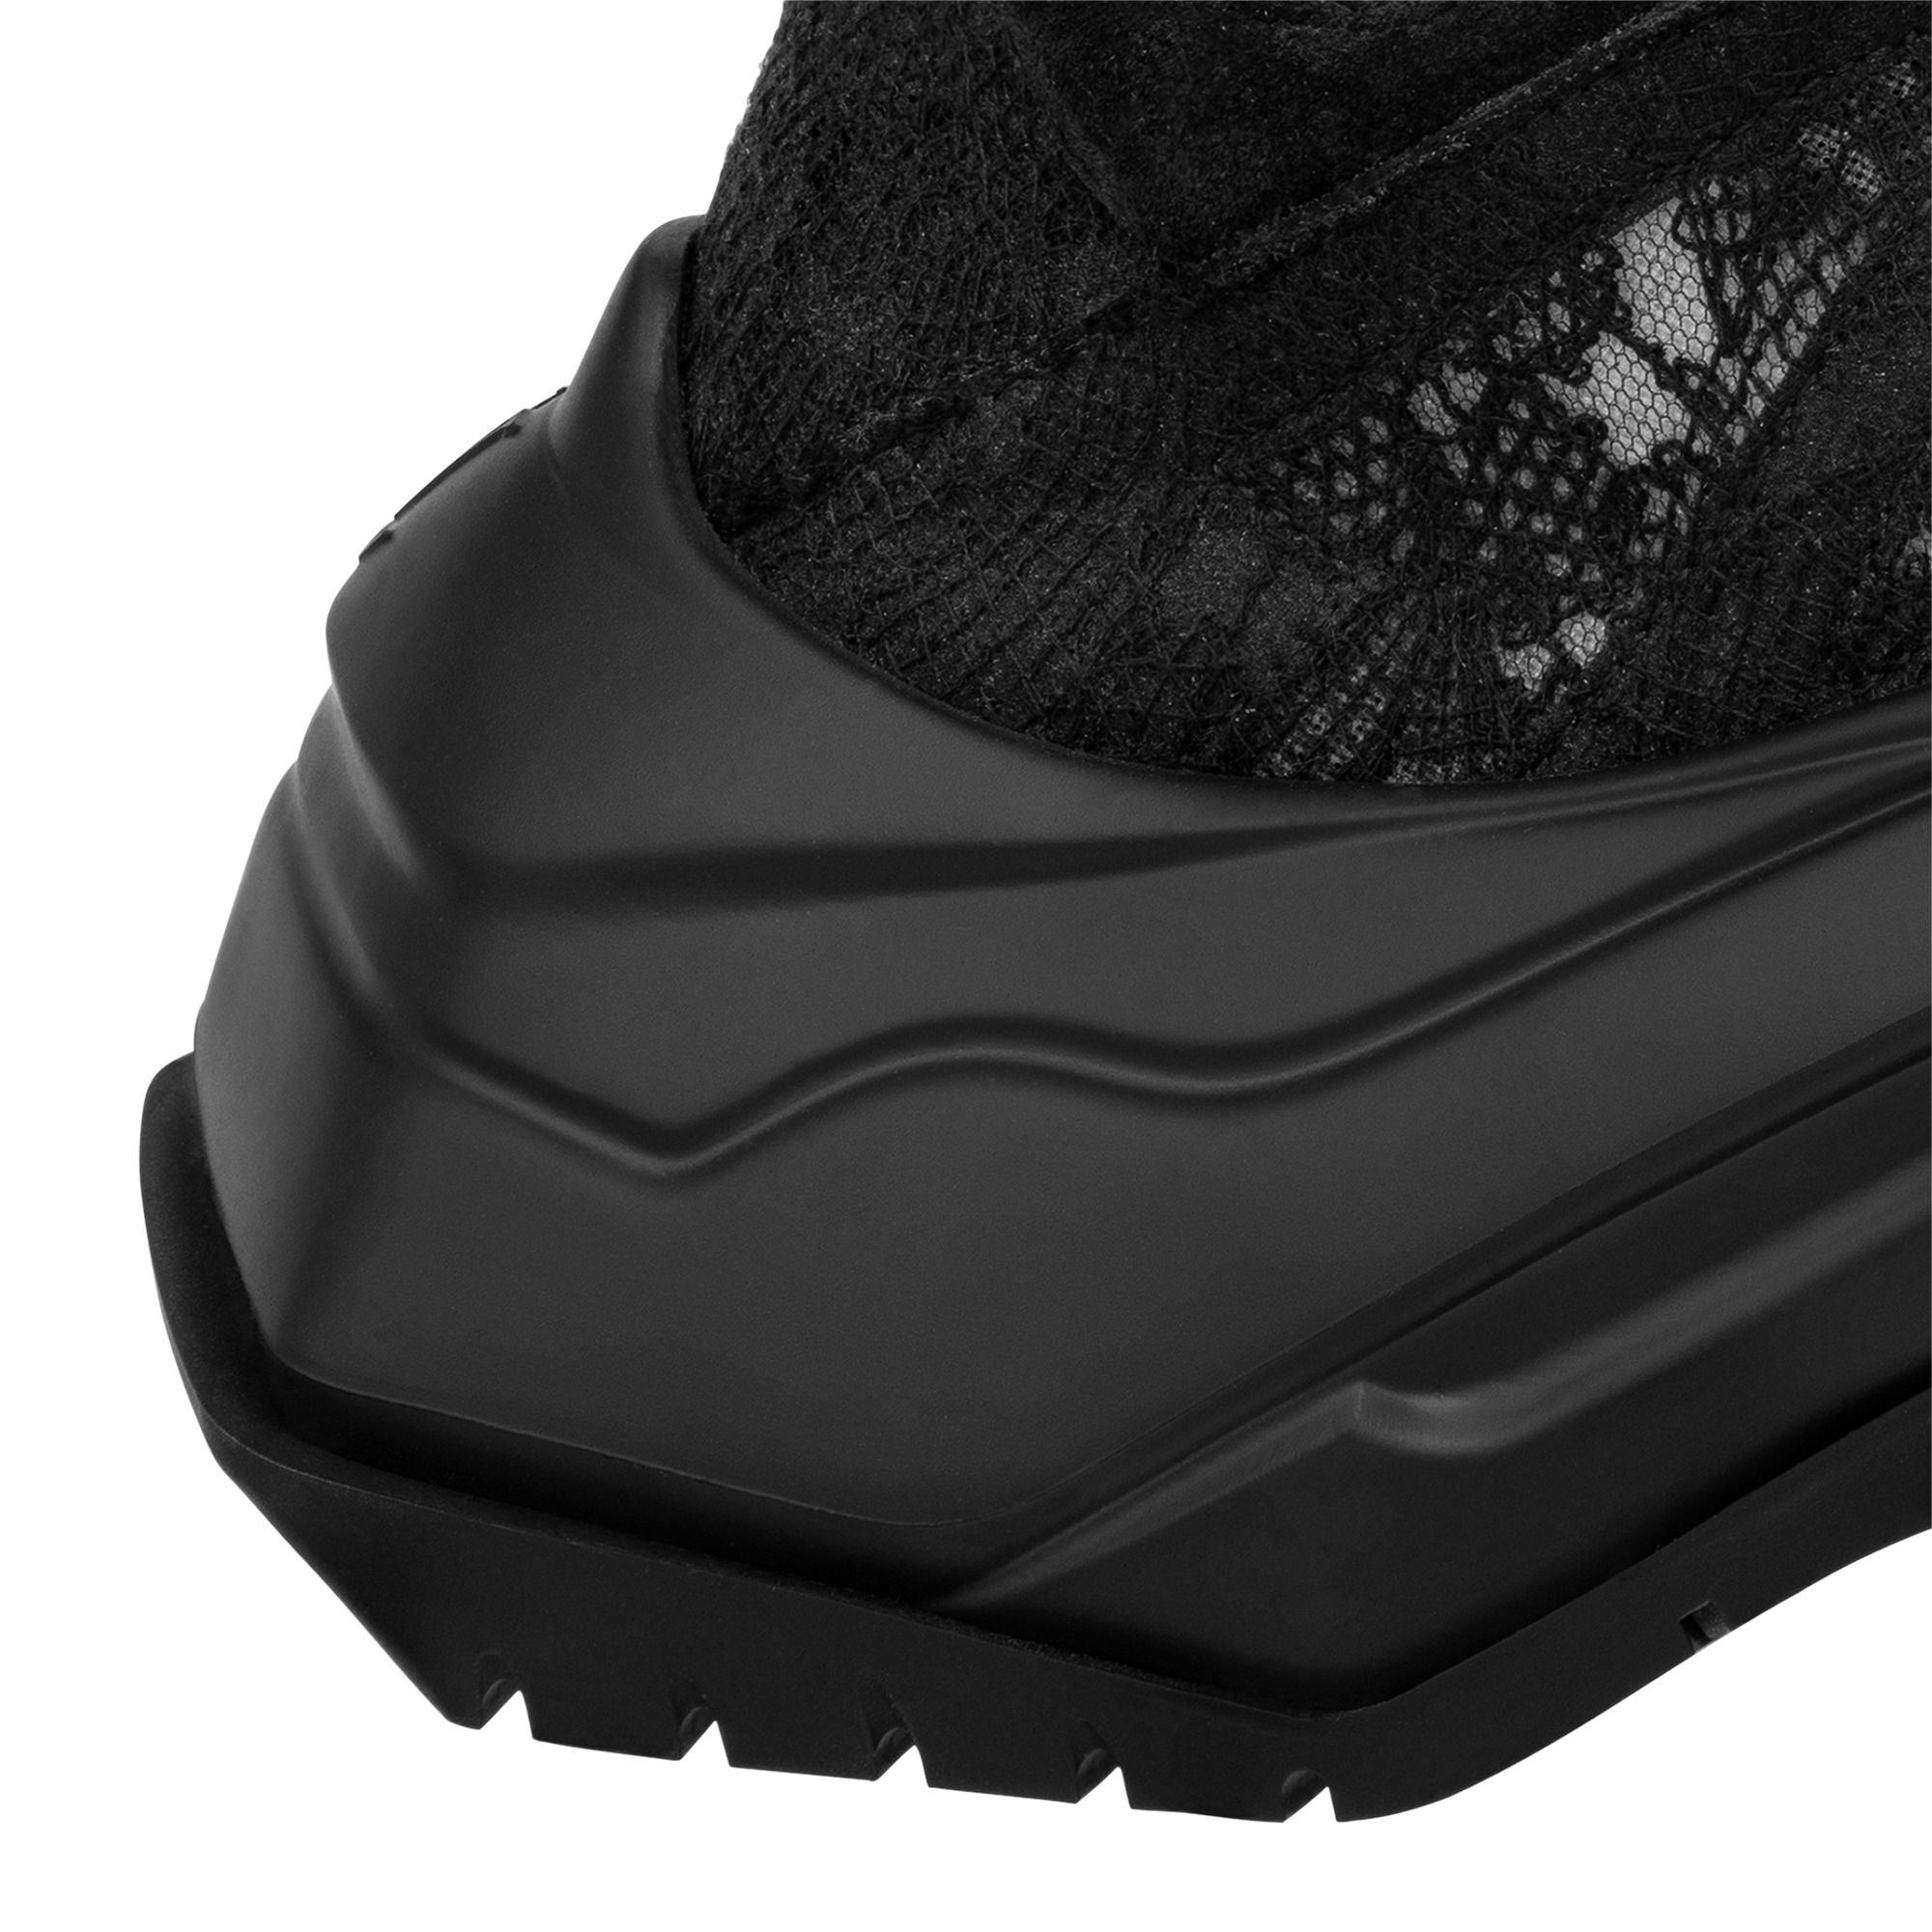 LV Archlight 2.0 Platform Sneaker - 3